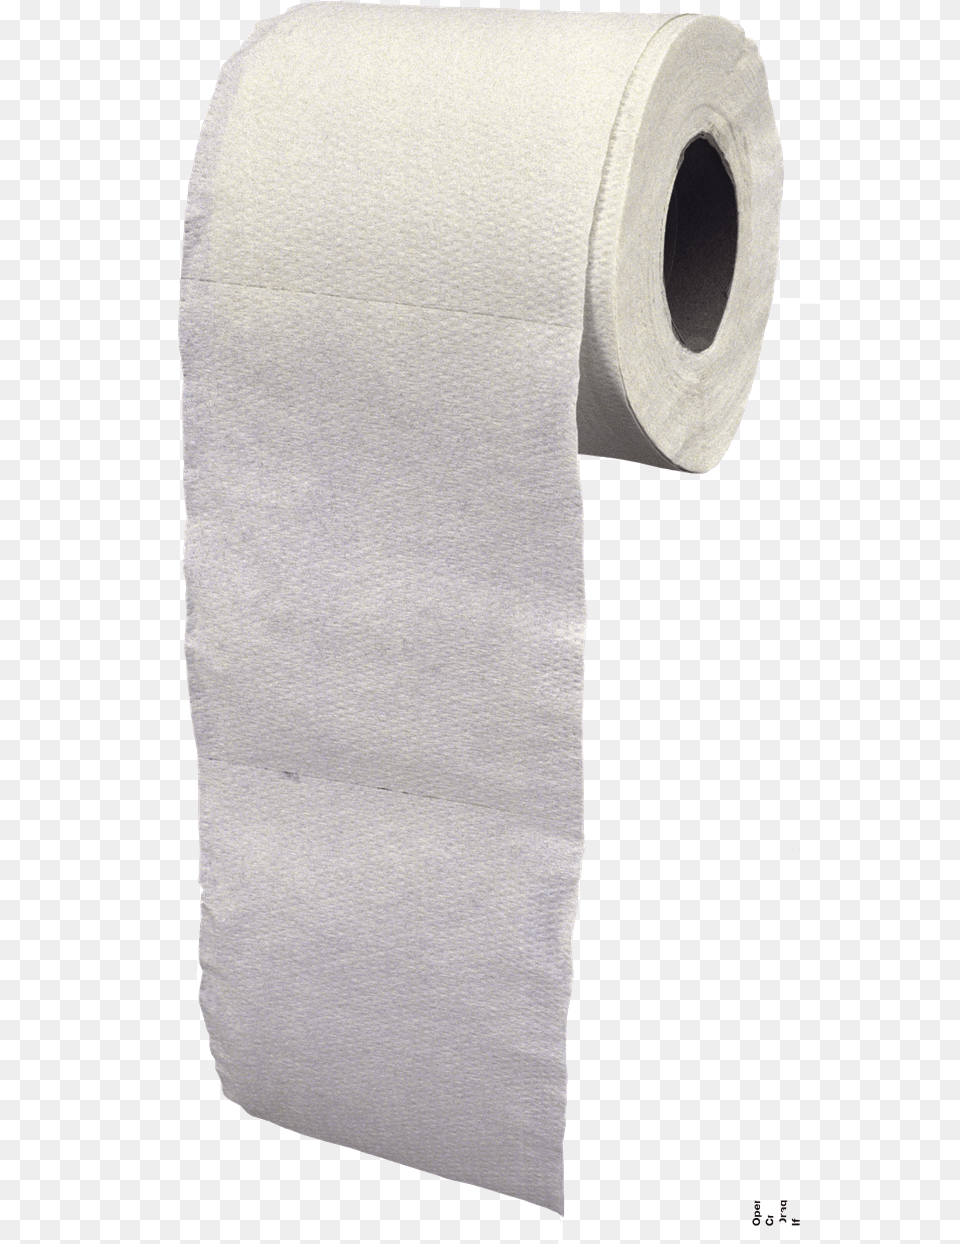 Toilet Paper Pic Toilet Paper, Paper Towel, Tissue, Toilet Paper, Towel Png Image